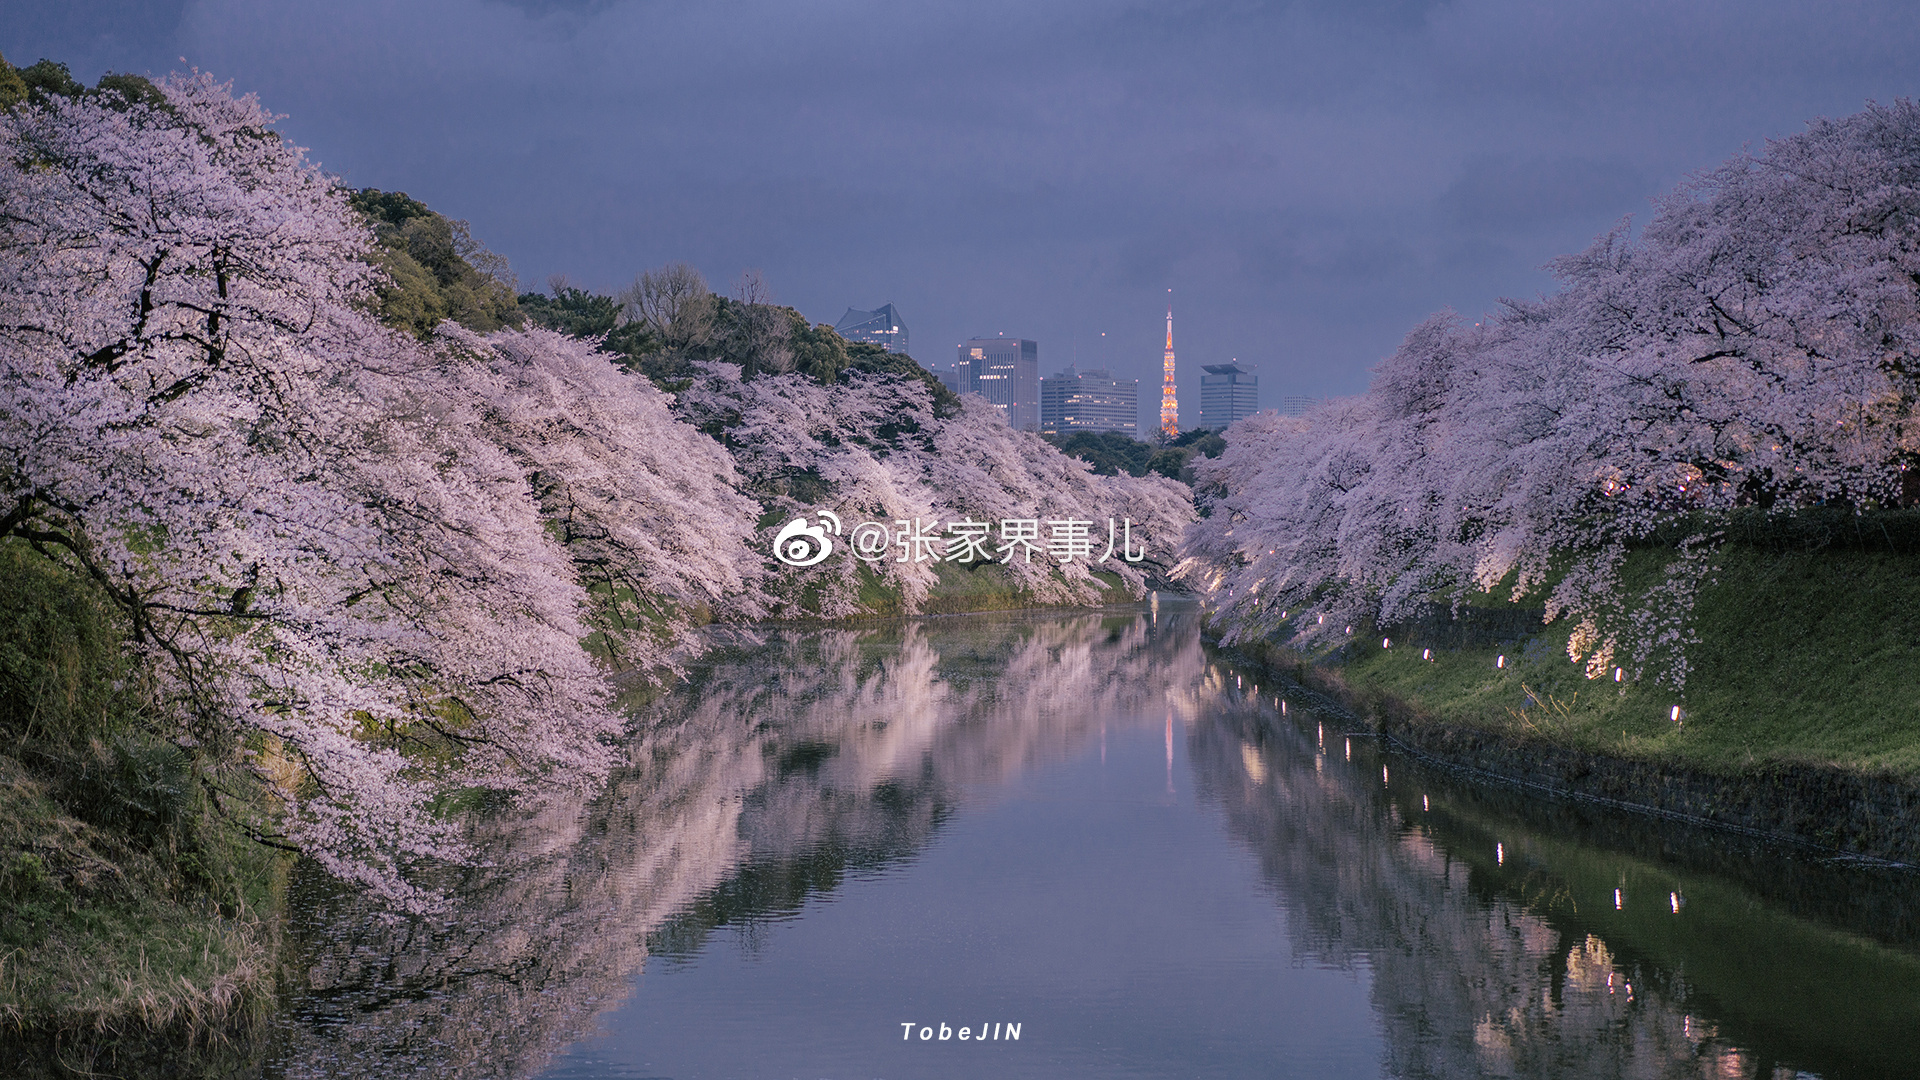 【携程攻略】景点,日本千鸟渊一个应季赏樱花的好地方。2019年3月底特意去千鸟渊看看樱…